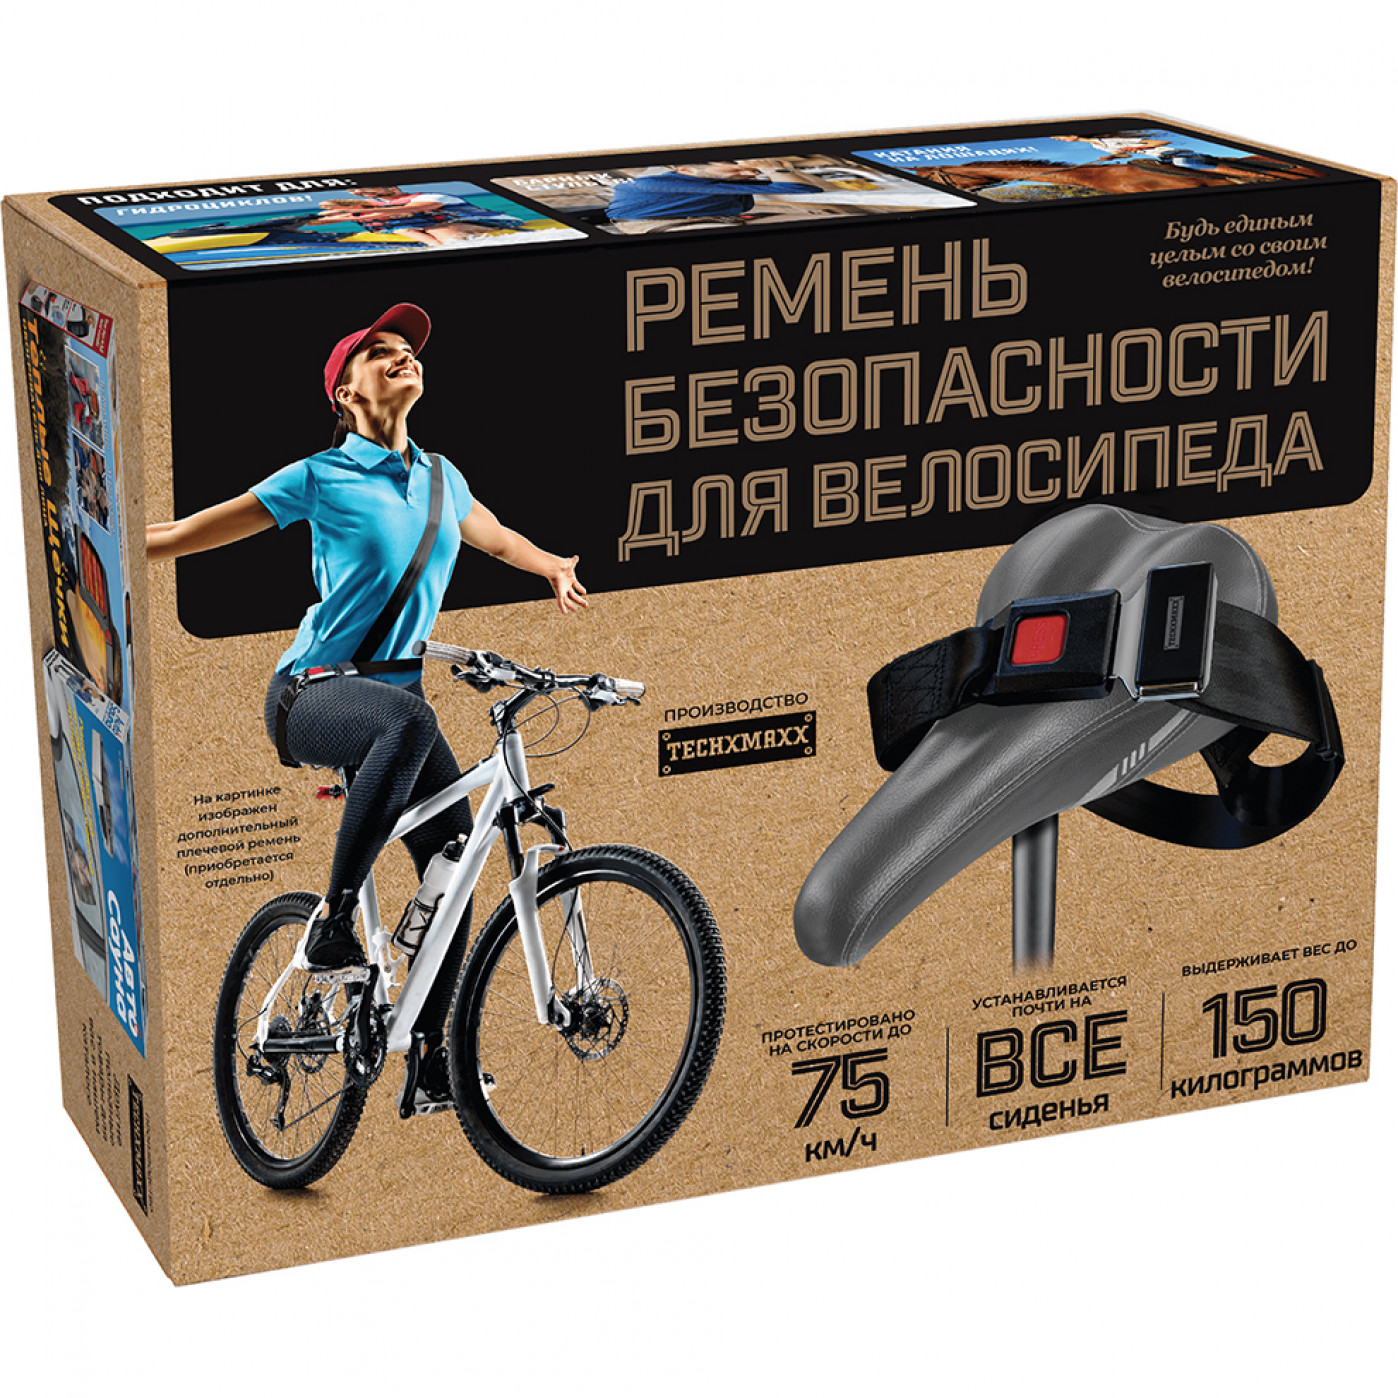 Запчасти для велосипеда – купить в Новосибирске, цена в интернет-магазине Rich Family